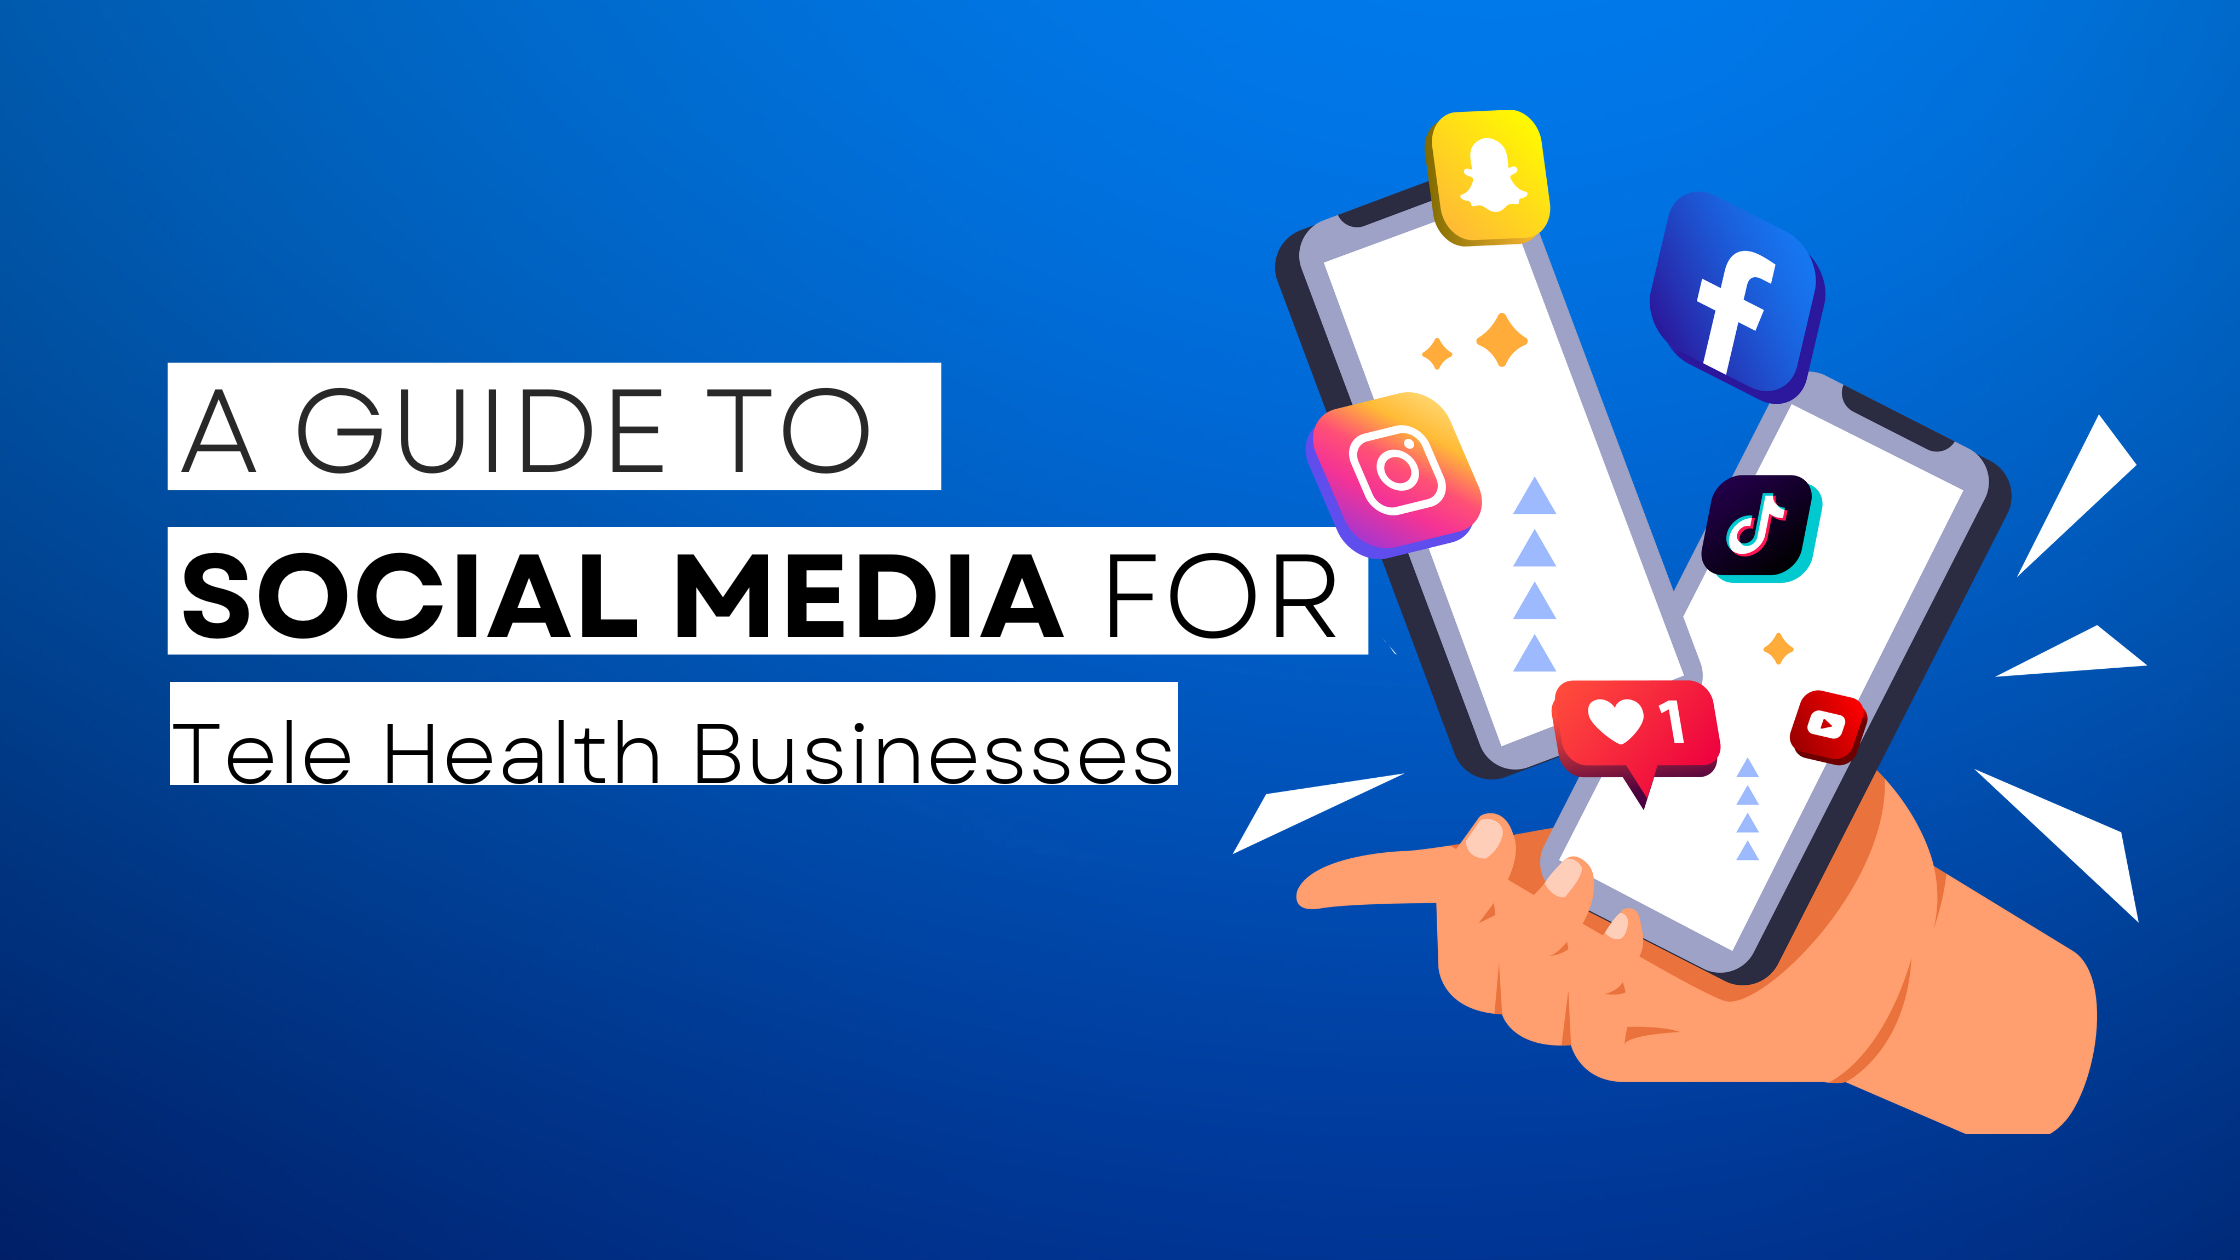 How to start Tele Health on social media